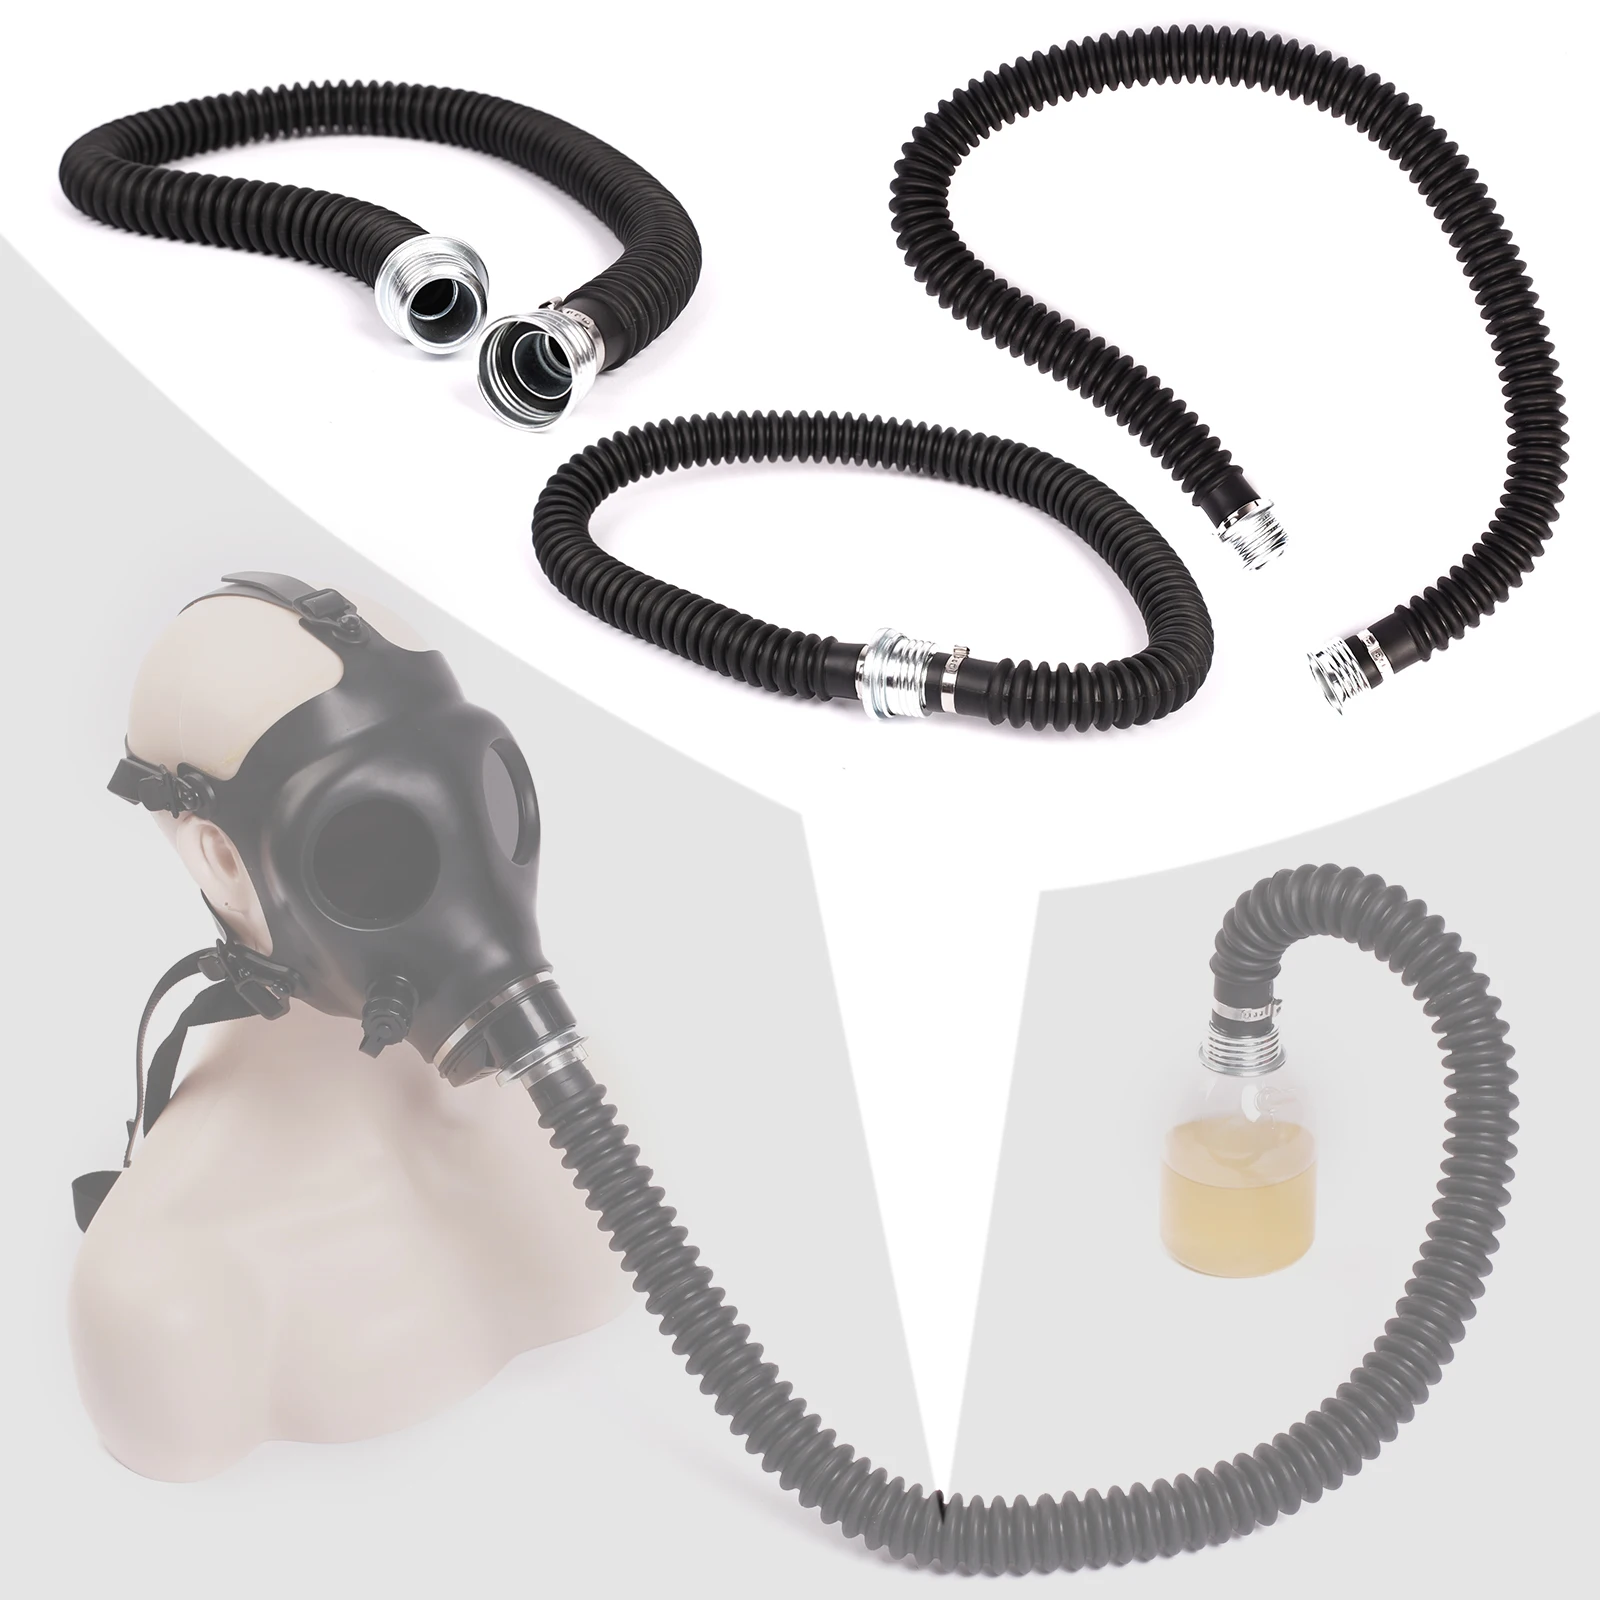 Ftshist Atem Control Rohr Gewinde T 40mm Interface Für Latex Gas Maske Sex Ersticken Ventil Gewinde Verbindung Zubehör